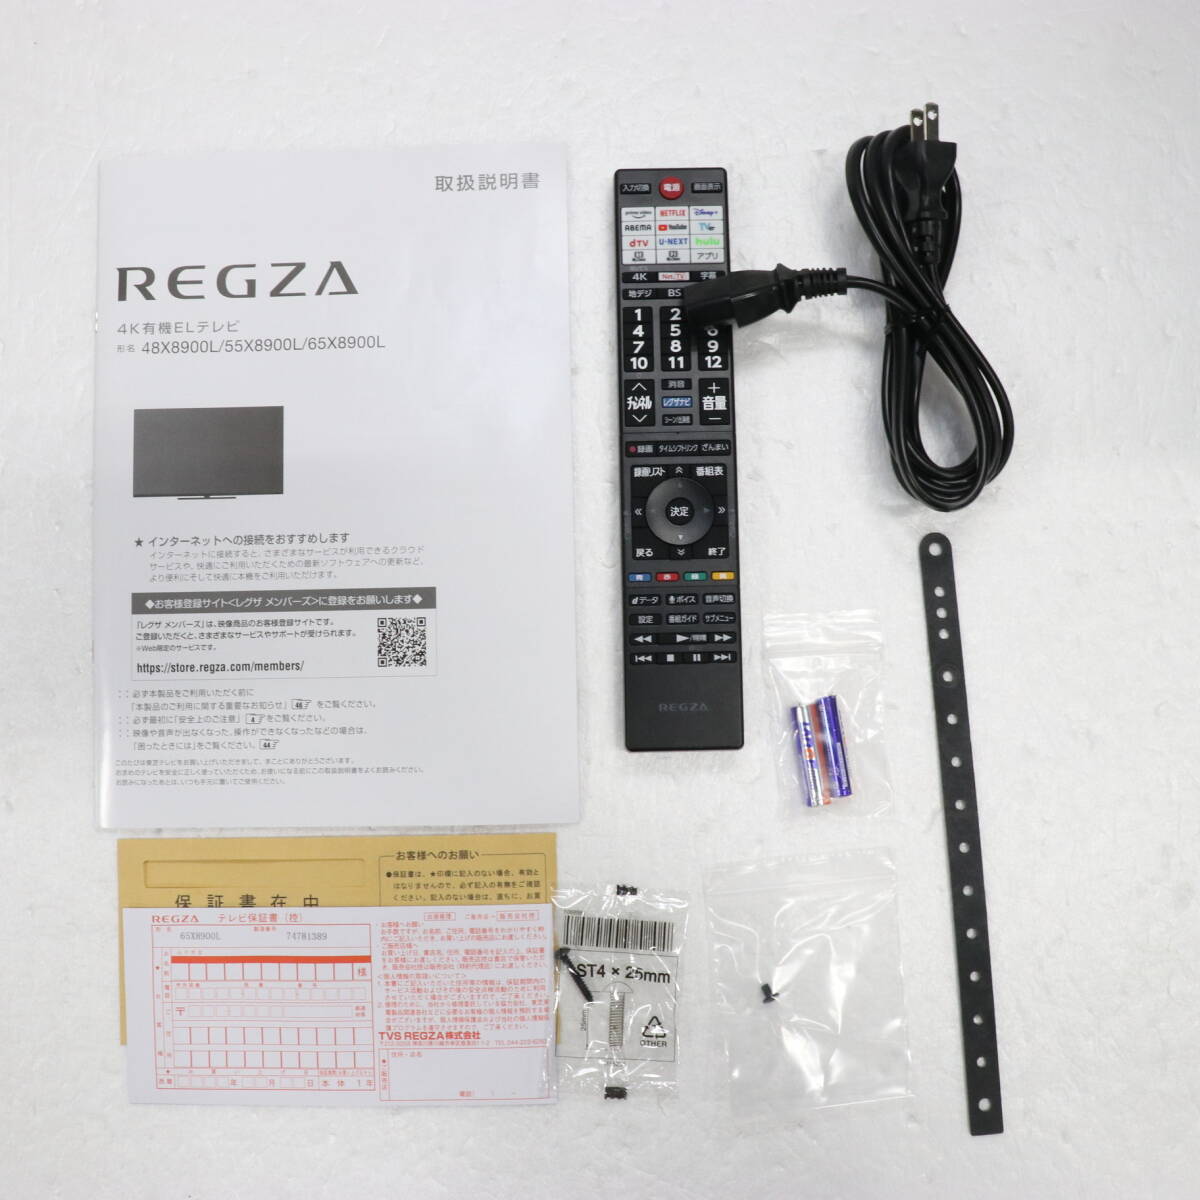  Toshiba TVS REGZA 65X8900L [65.] 2023 год производства экспонирование прекрасный товар 1 год гарантия ( быстрое решение .5 год гарантия ) высокое разрешение [ Regza двигатель ZRII] погрузка 4K иметь машина EL телевизор CQ